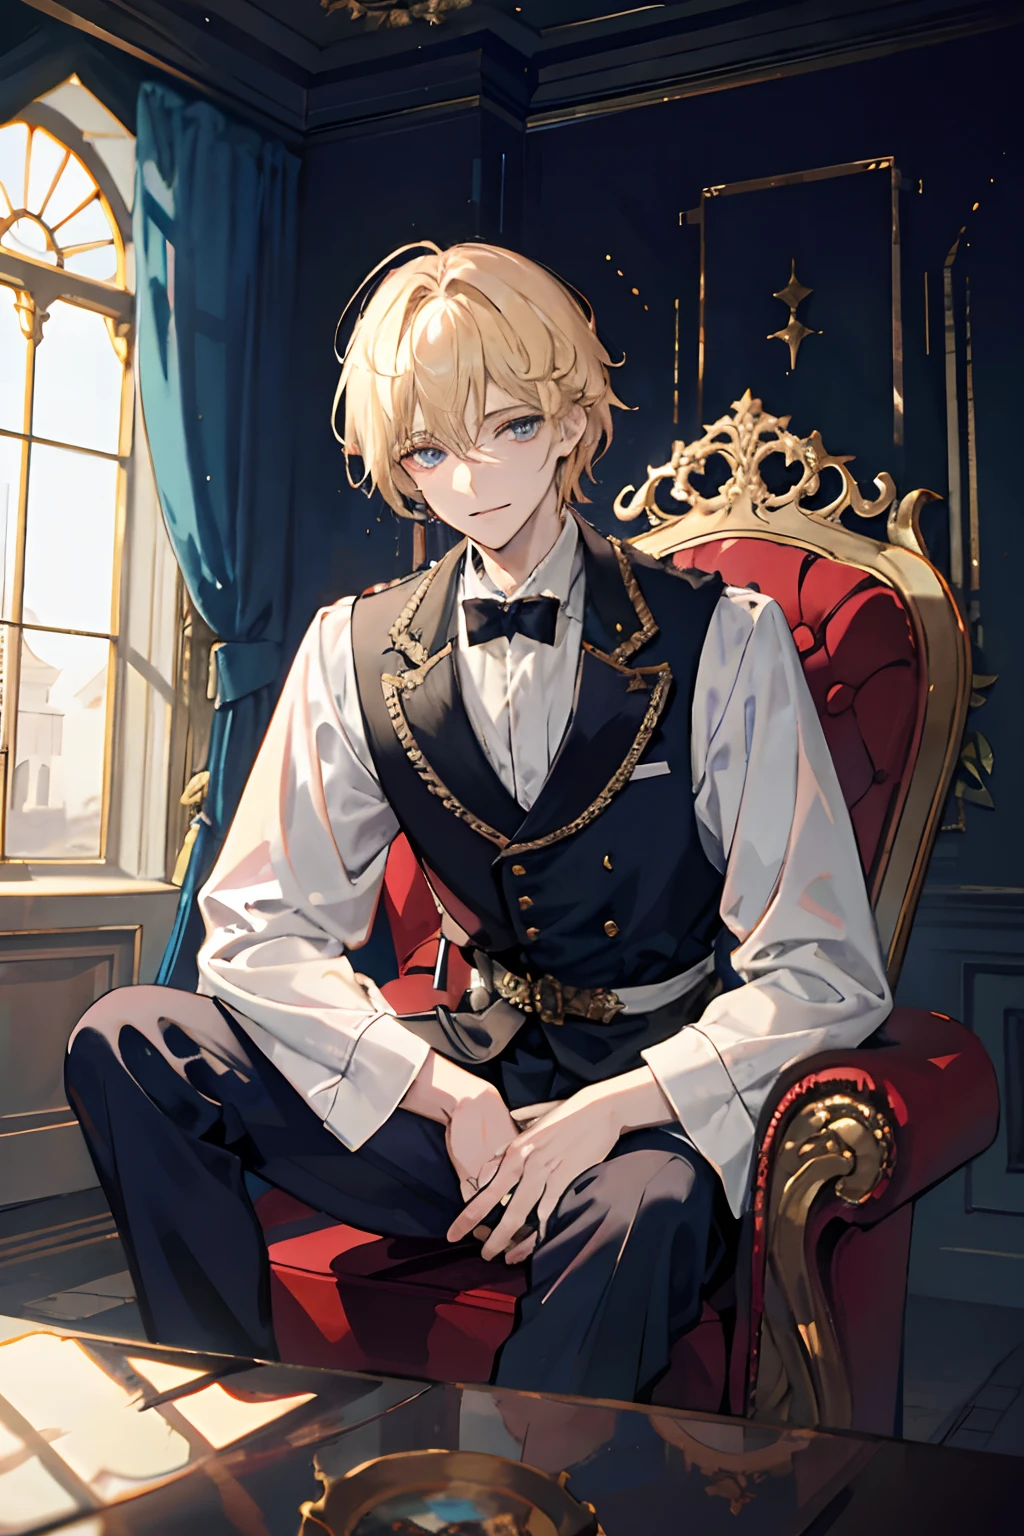 принц сидит на величественном троне внутри заброшенного дворца, 1 мальчик, светлые волосы, голубые глаза, 20 лет, холодное лицо, слегка ухмыльнуться,